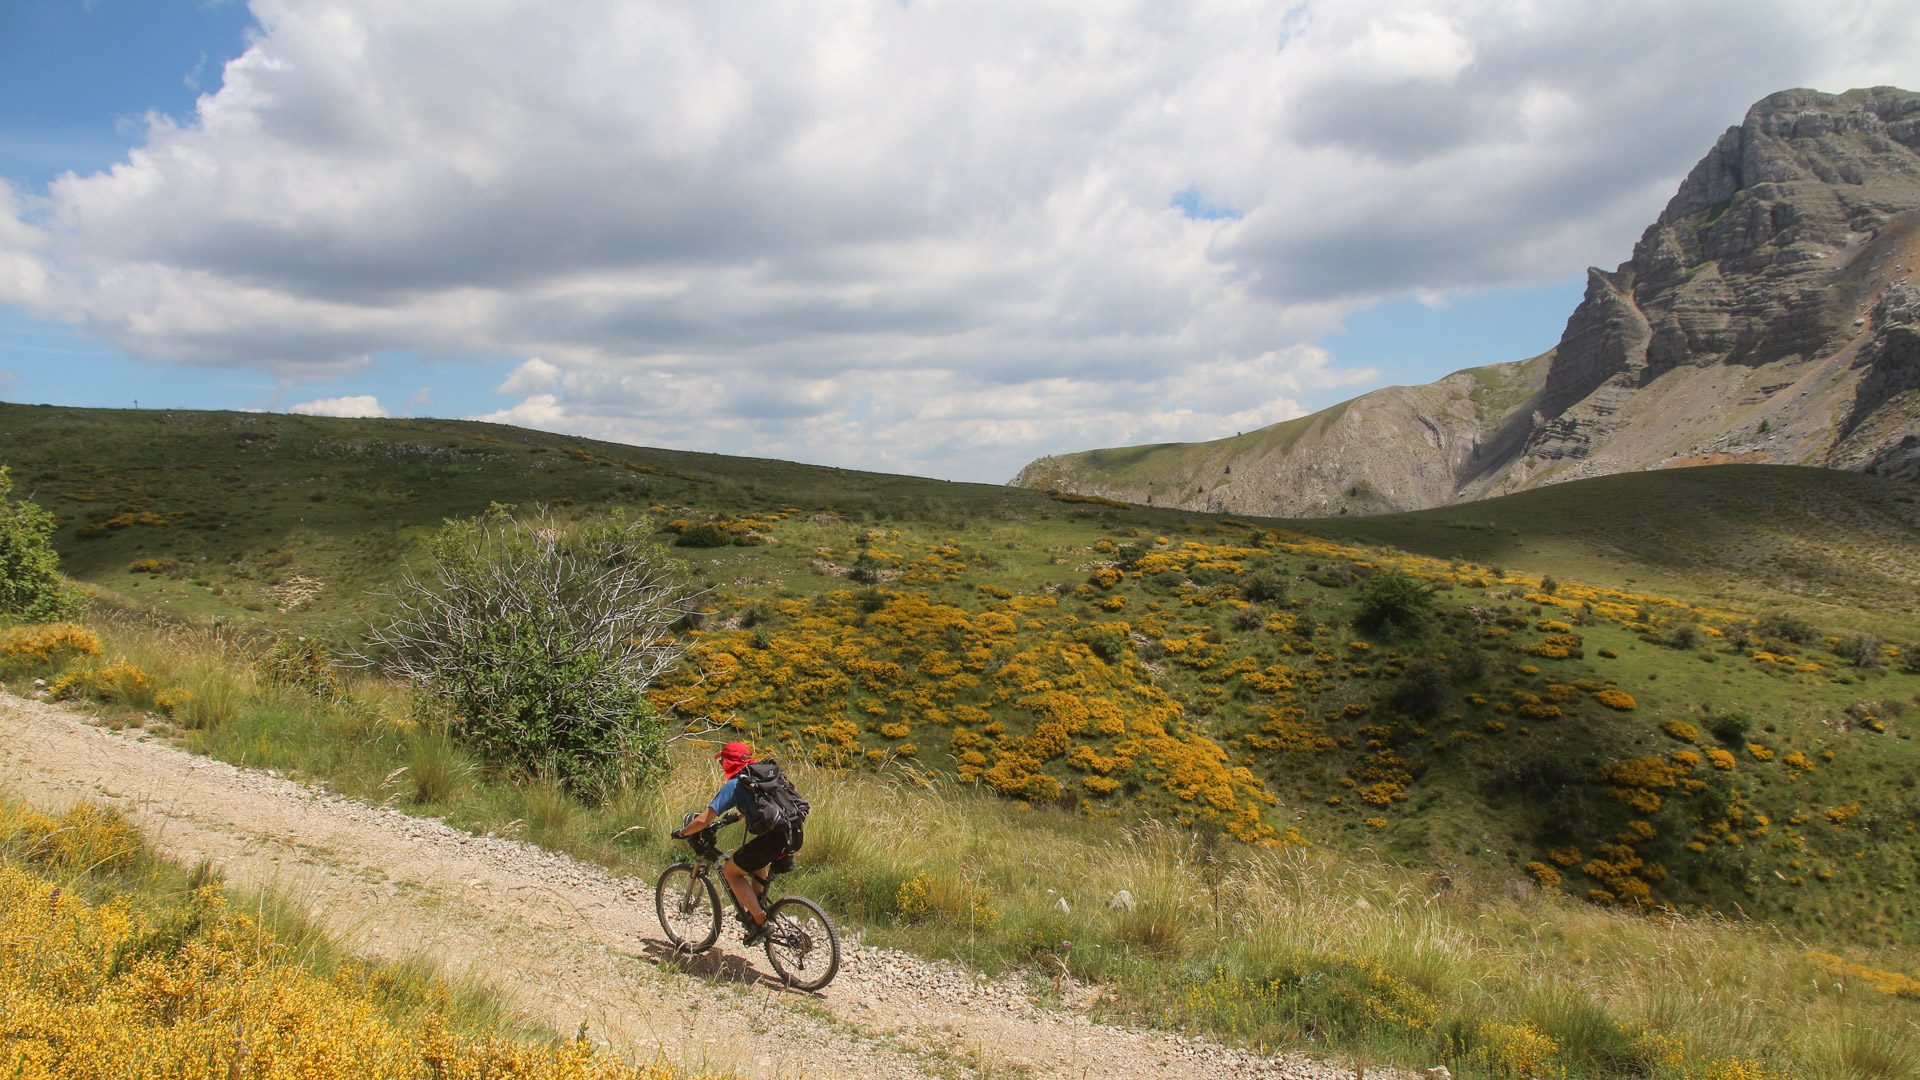 Vélo de montagne sur piste bordée de genets en fleurs